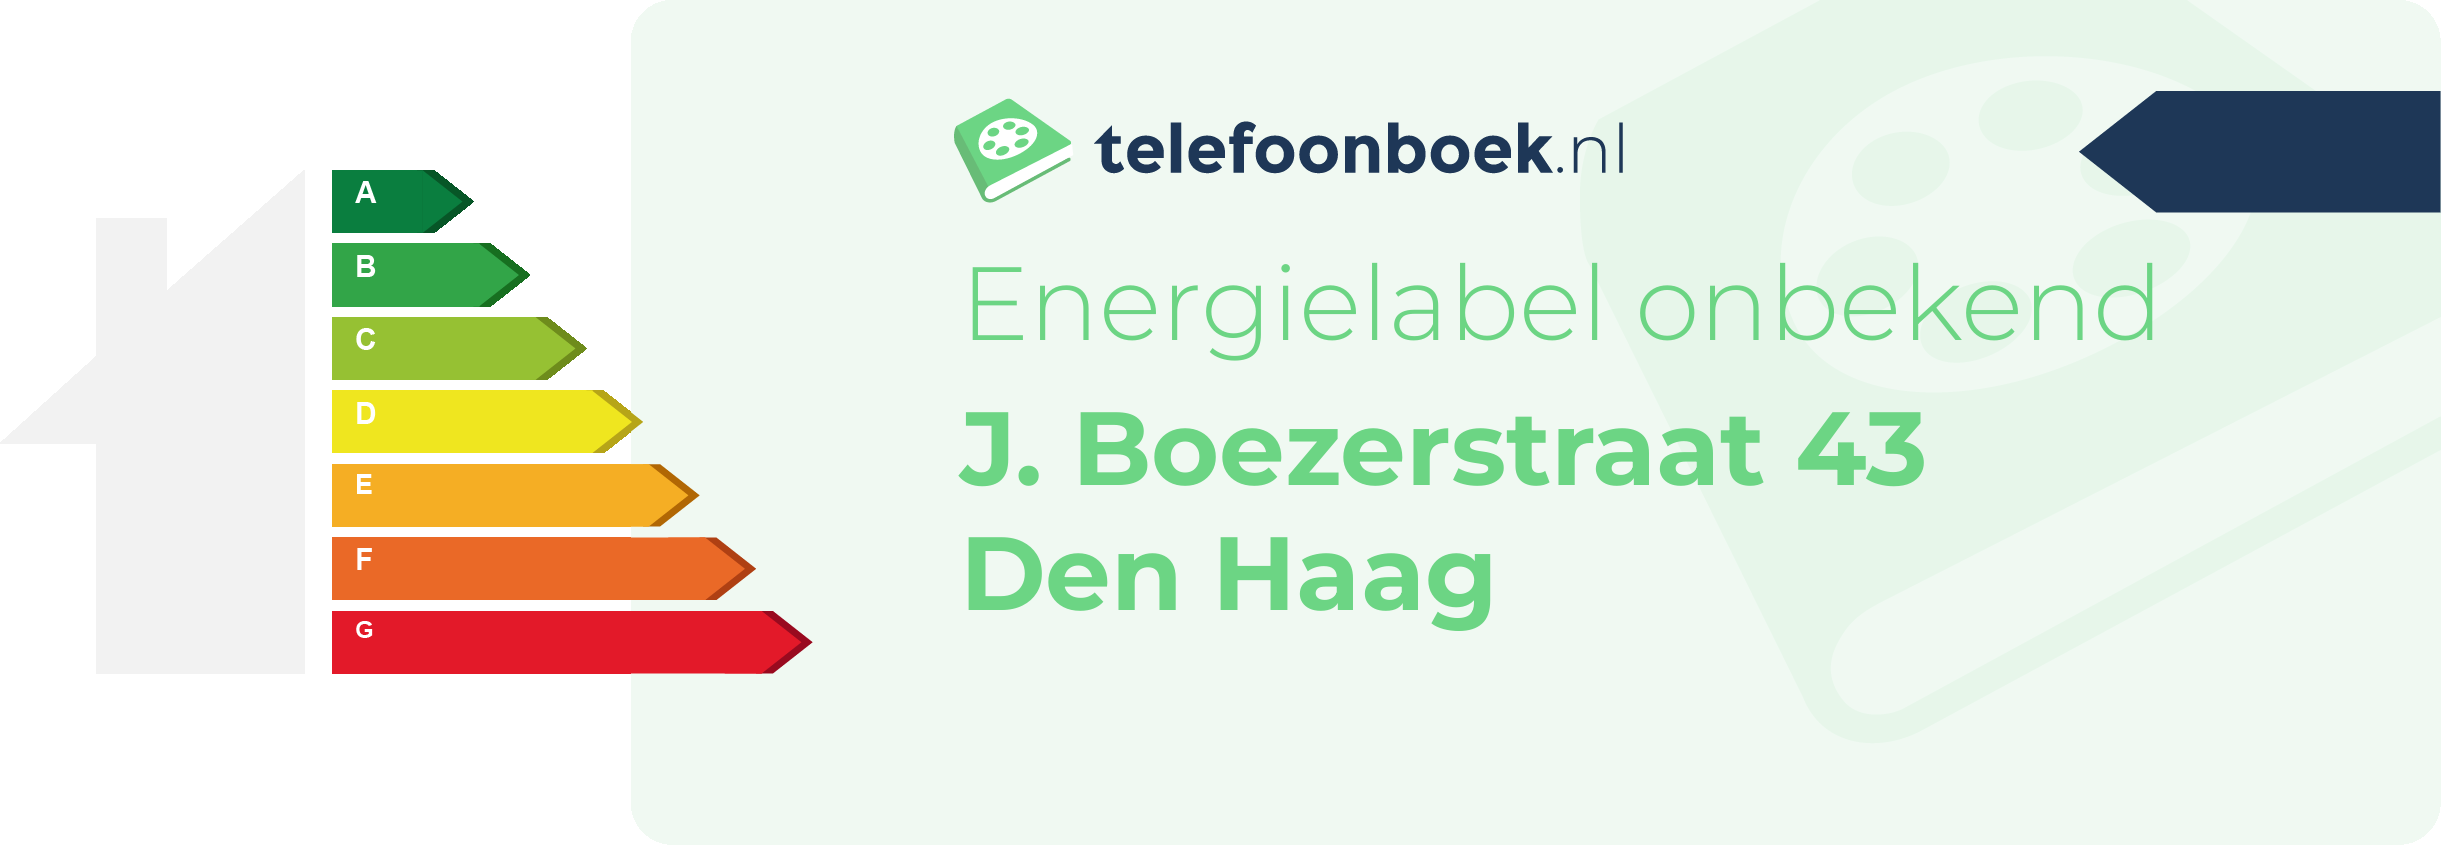 Energielabel J. Boezerstraat 43 Den Haag